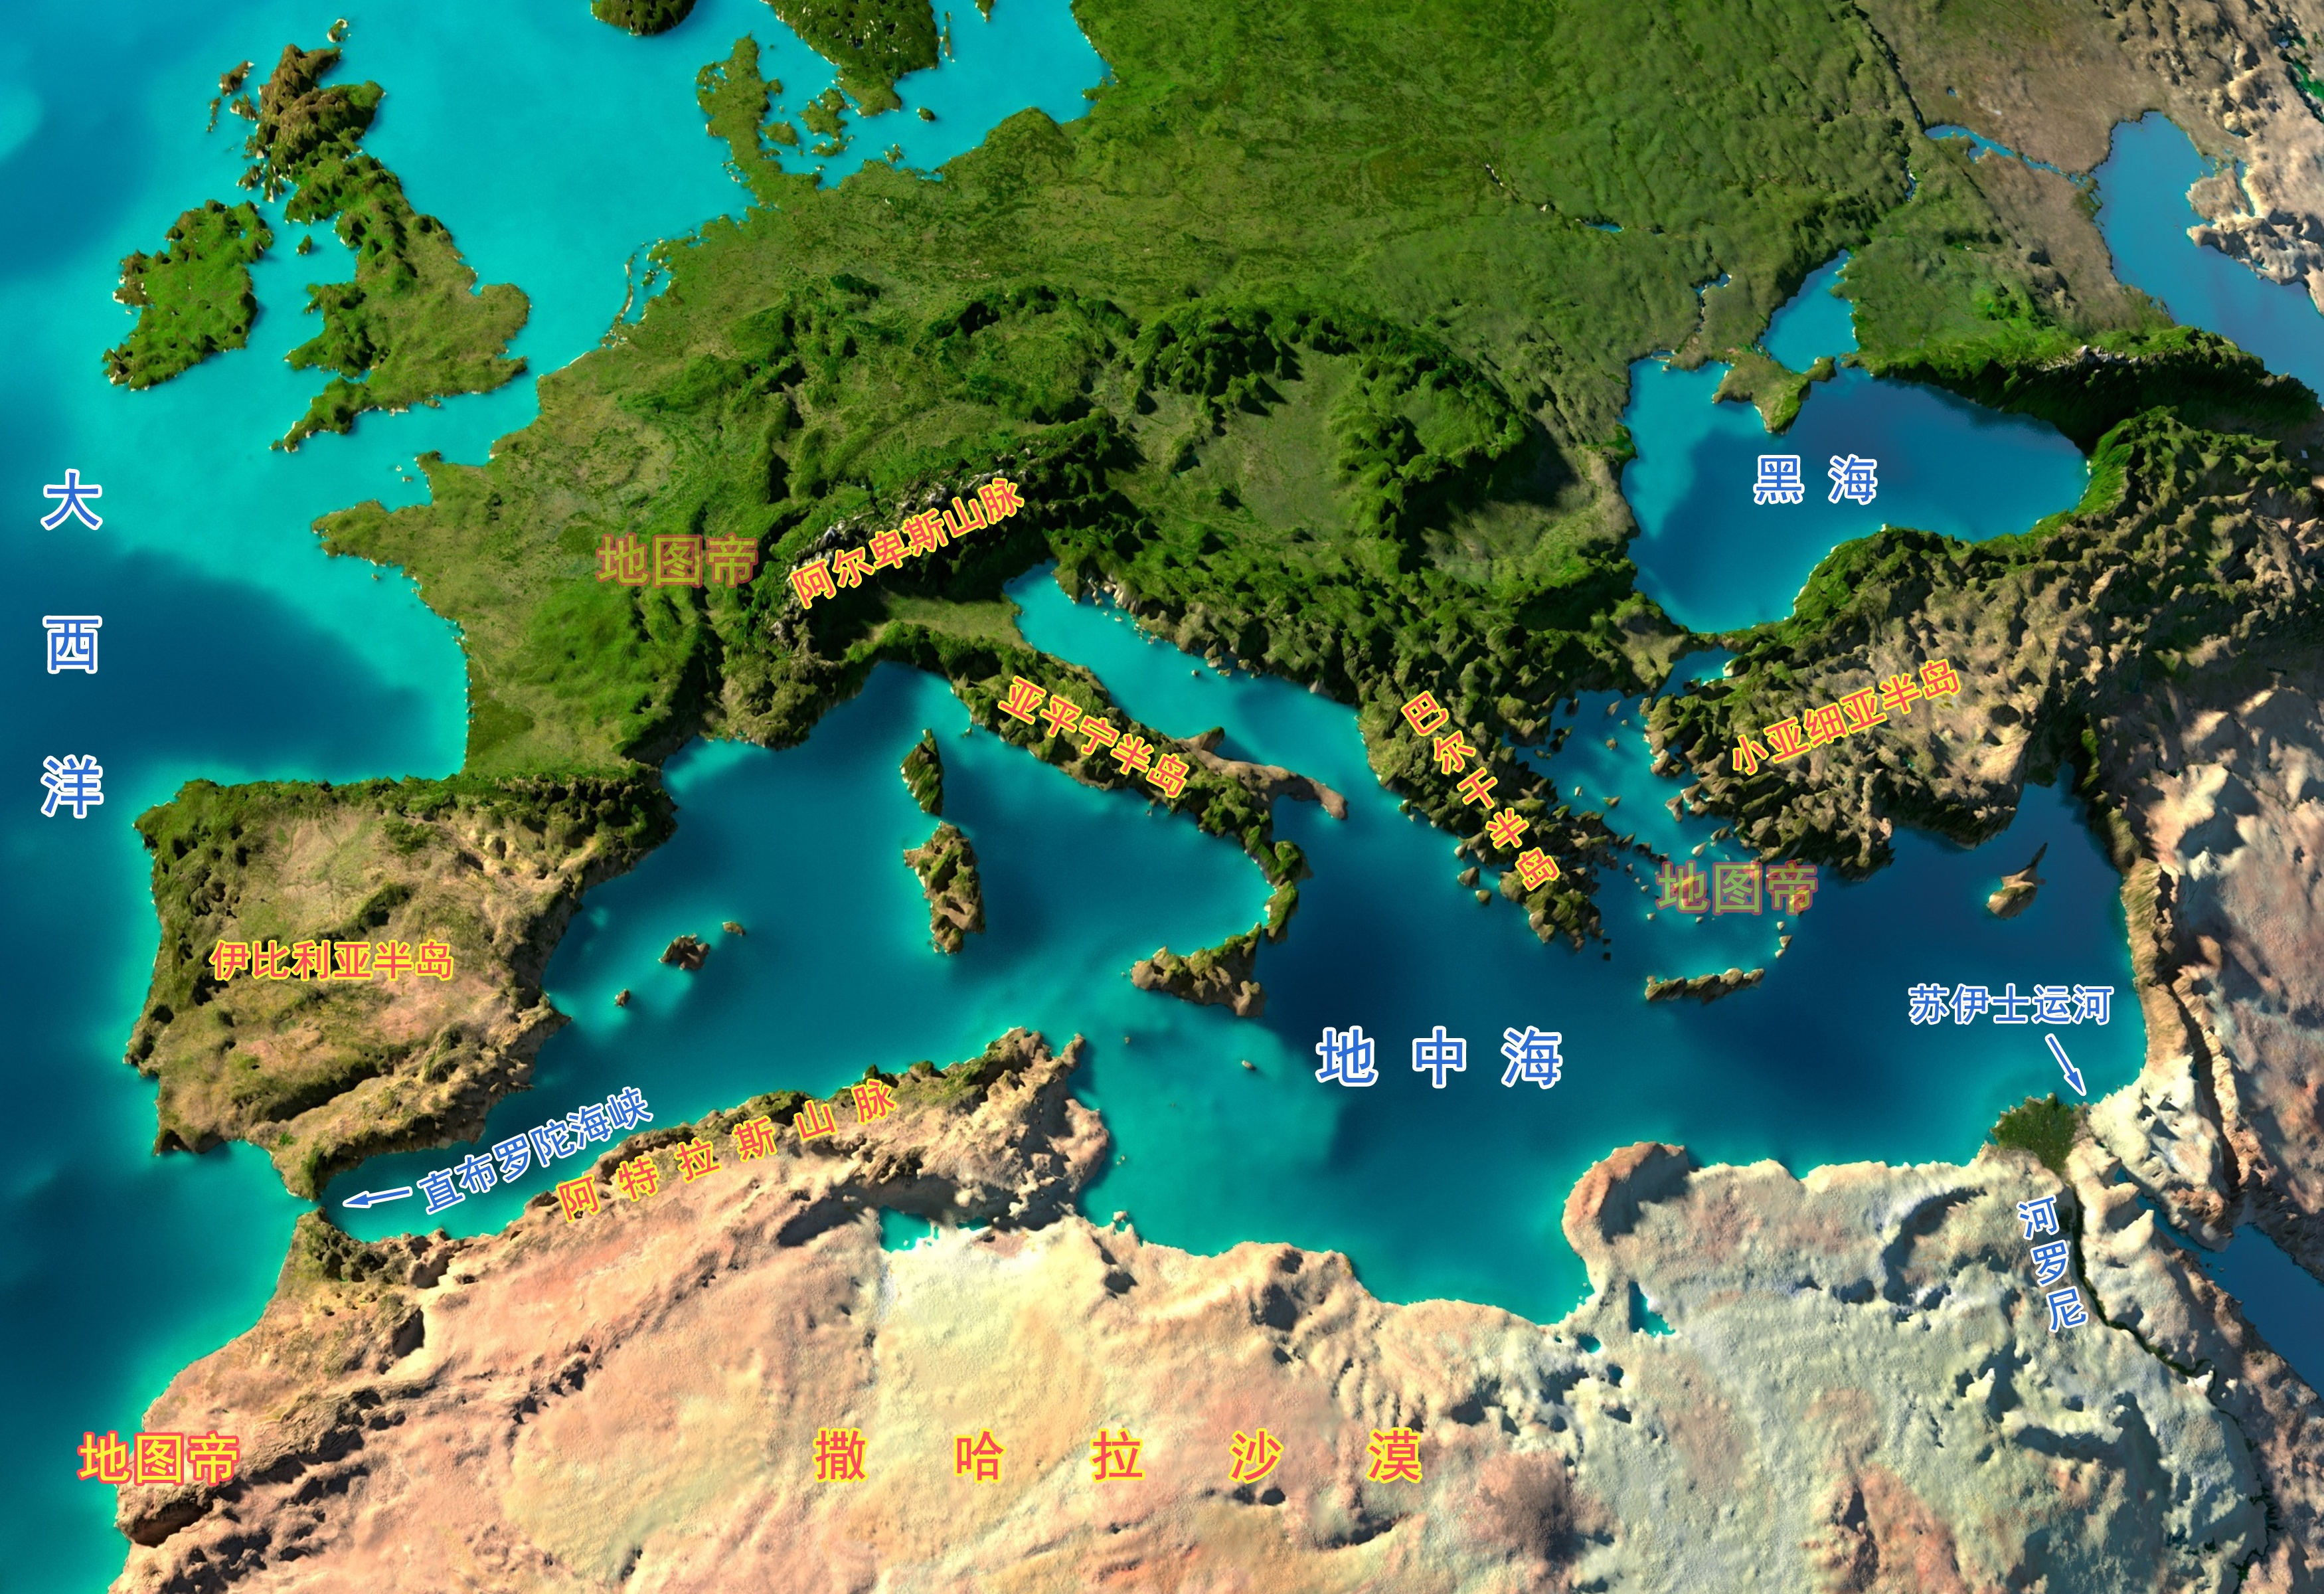 狭长的亚平宁半岛伸进地中海,还有撒丁岛和西西里岛两个大岛.